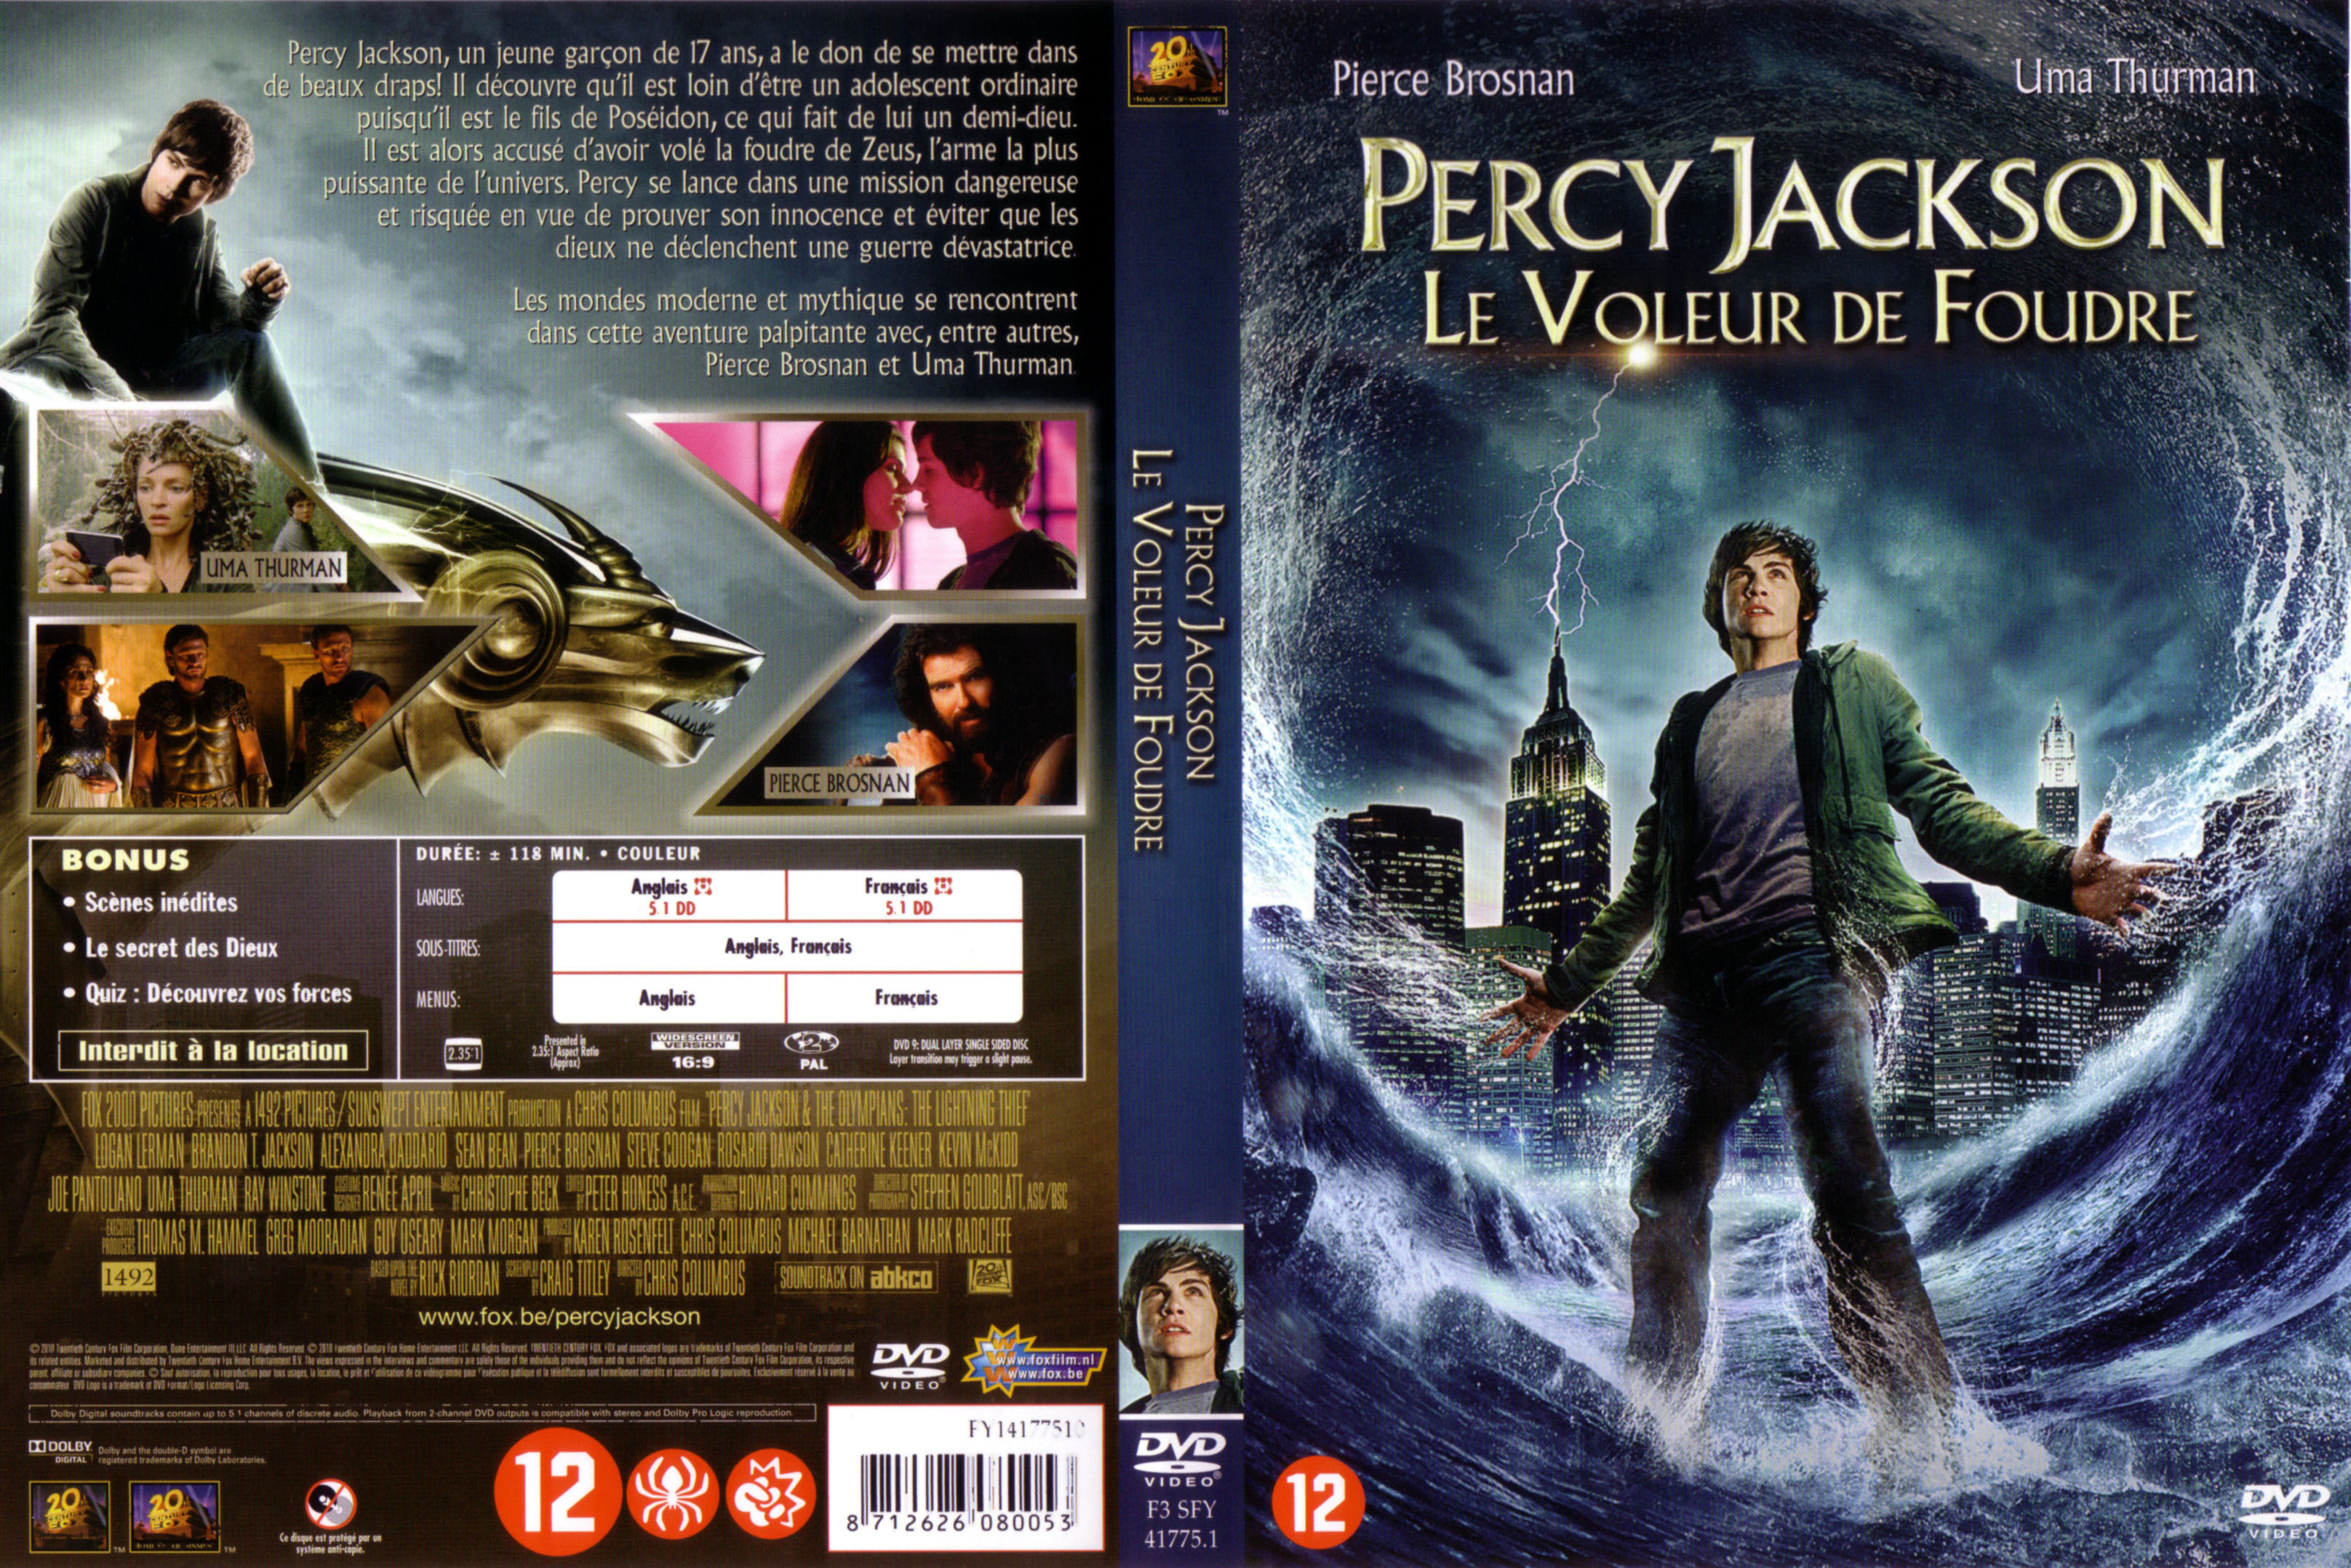 Jaquette DVD Percy Jackson le voleur de foudre v2